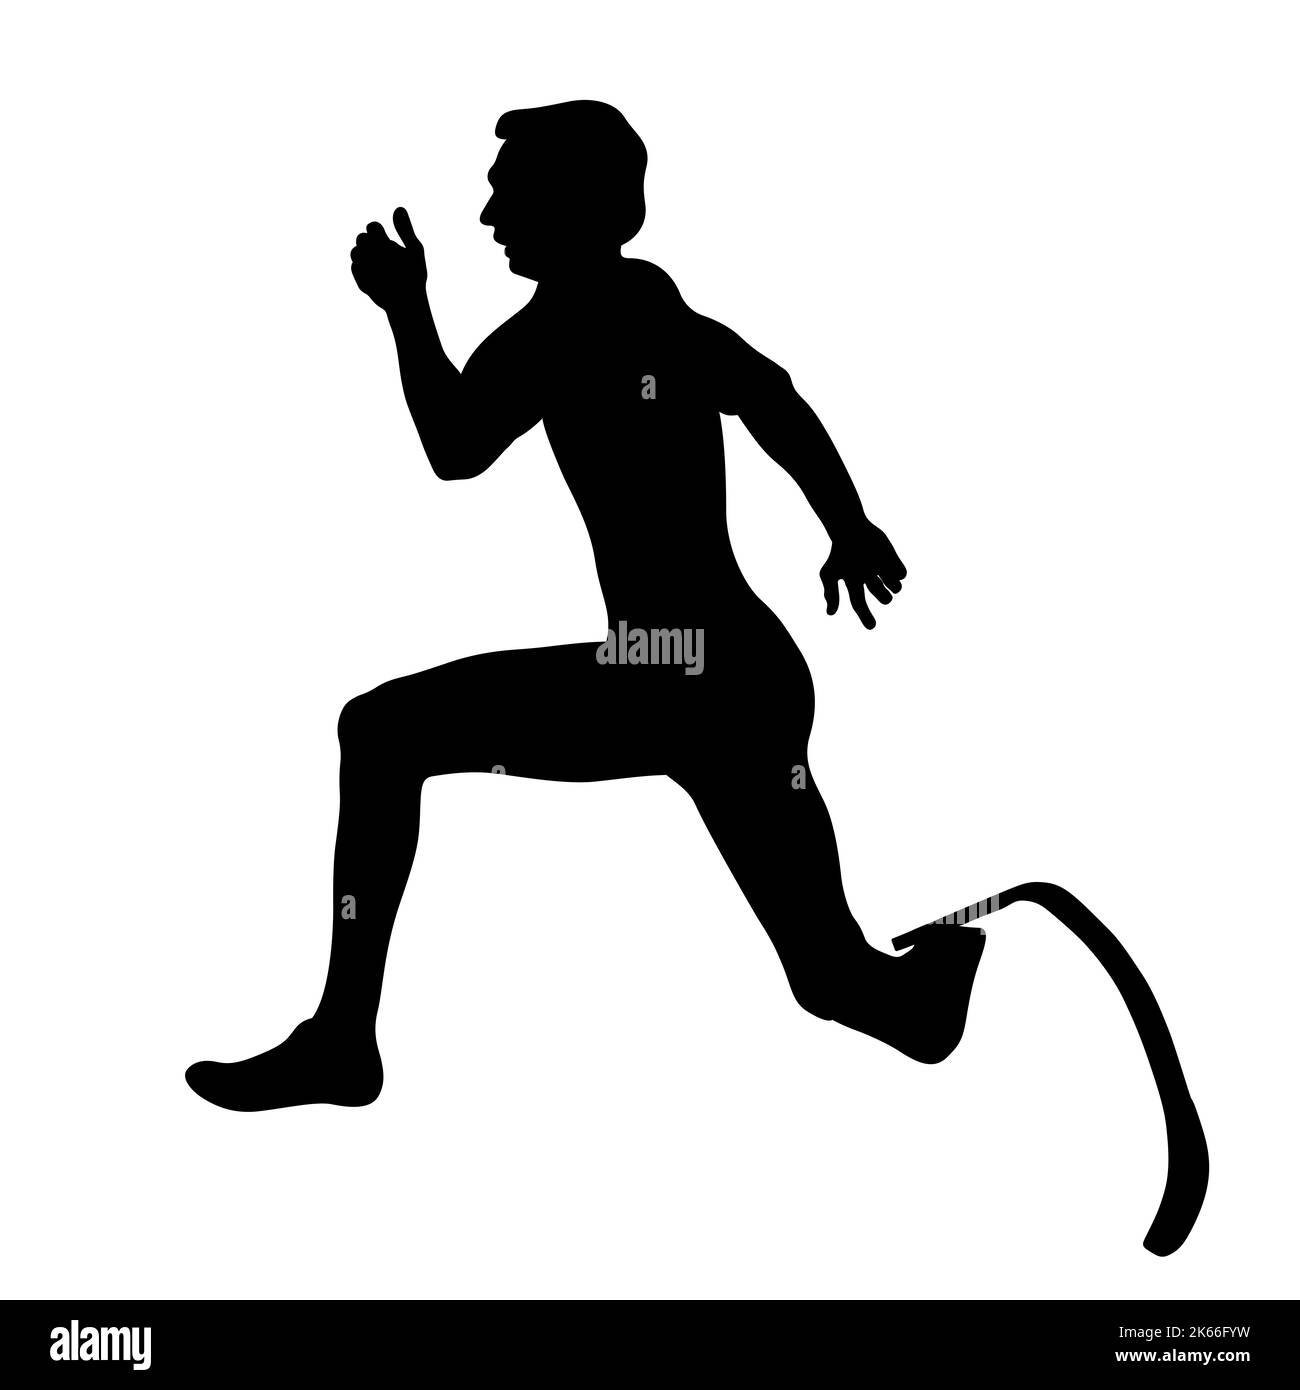 disabled runner on prosthesis running black silhouette Stock Photo